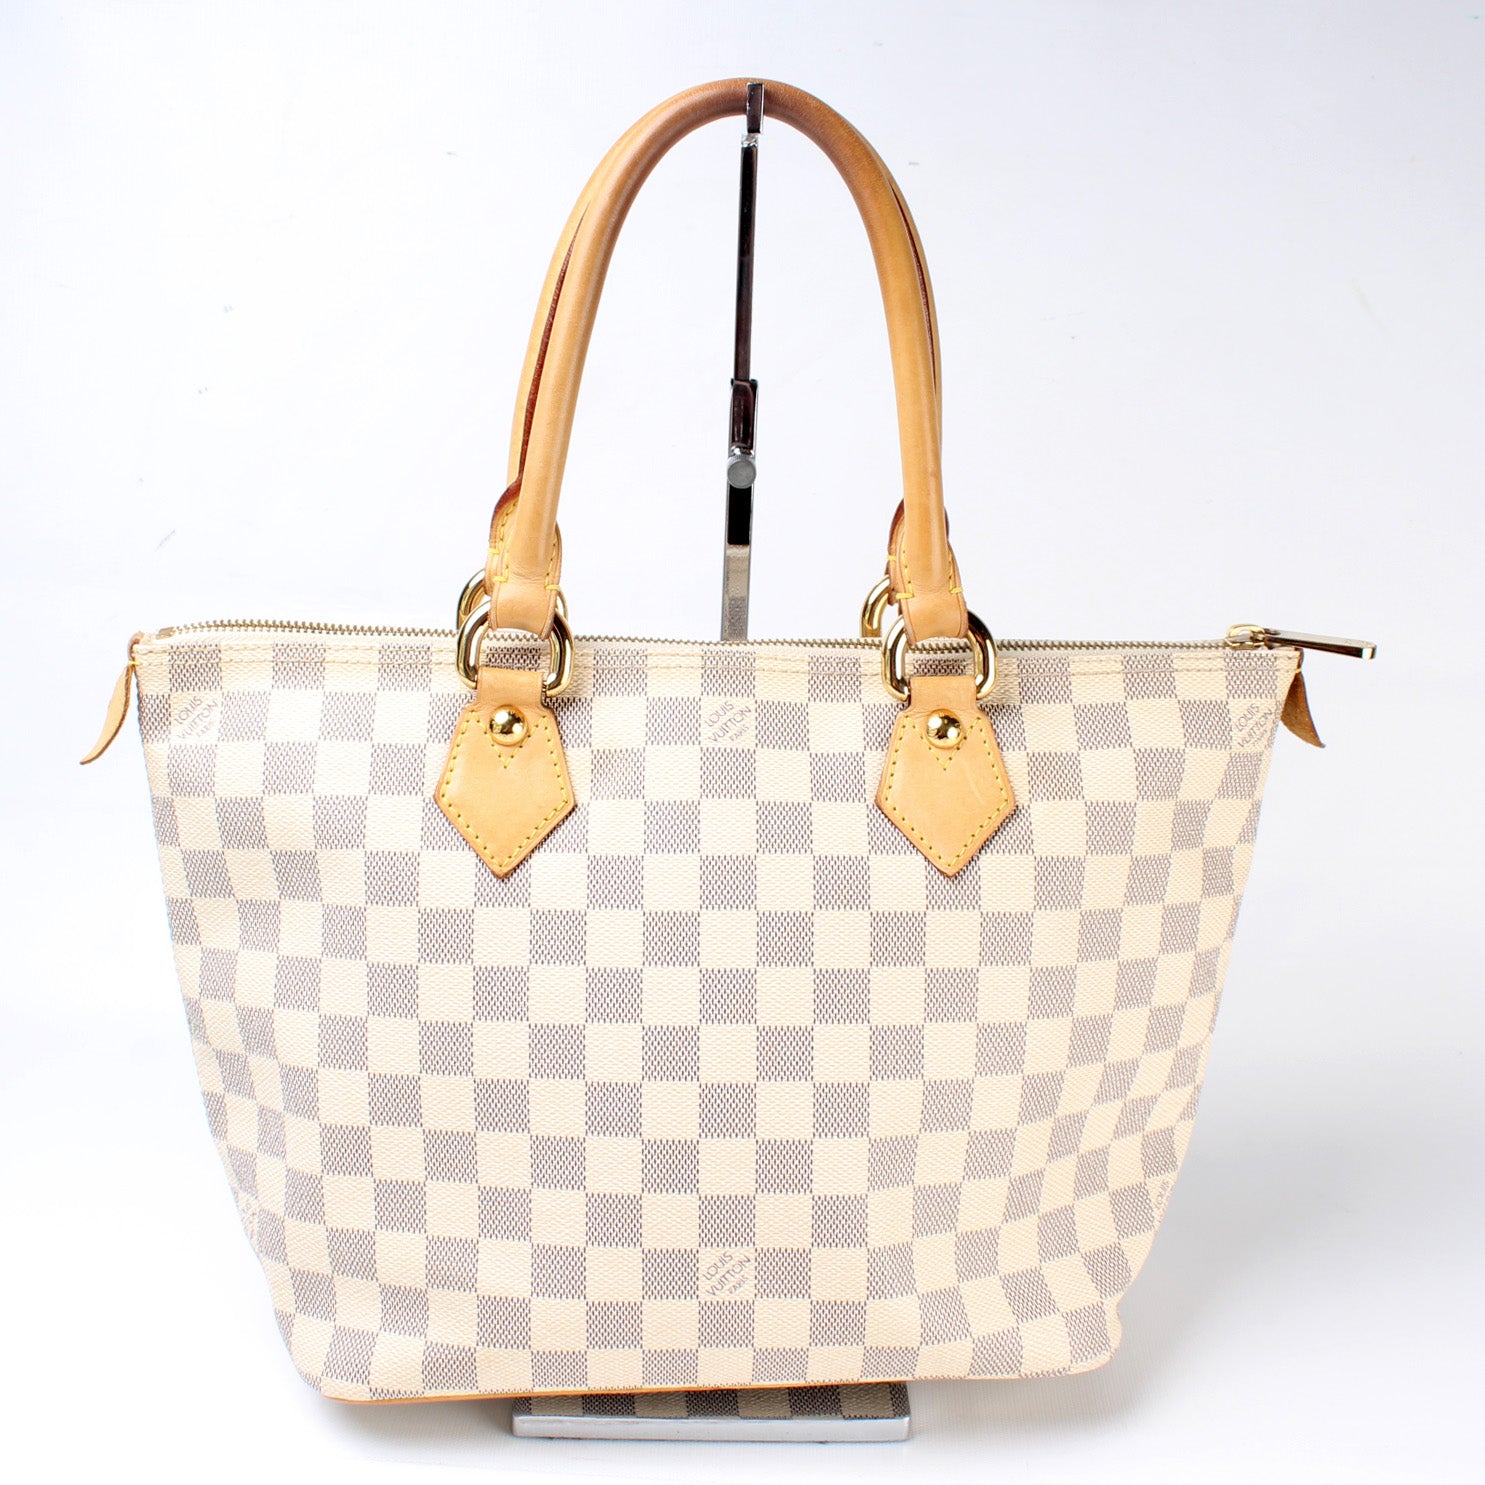 Shop for Louis Vuitton Damier Azur Canvas Leather Saleya PM Bag